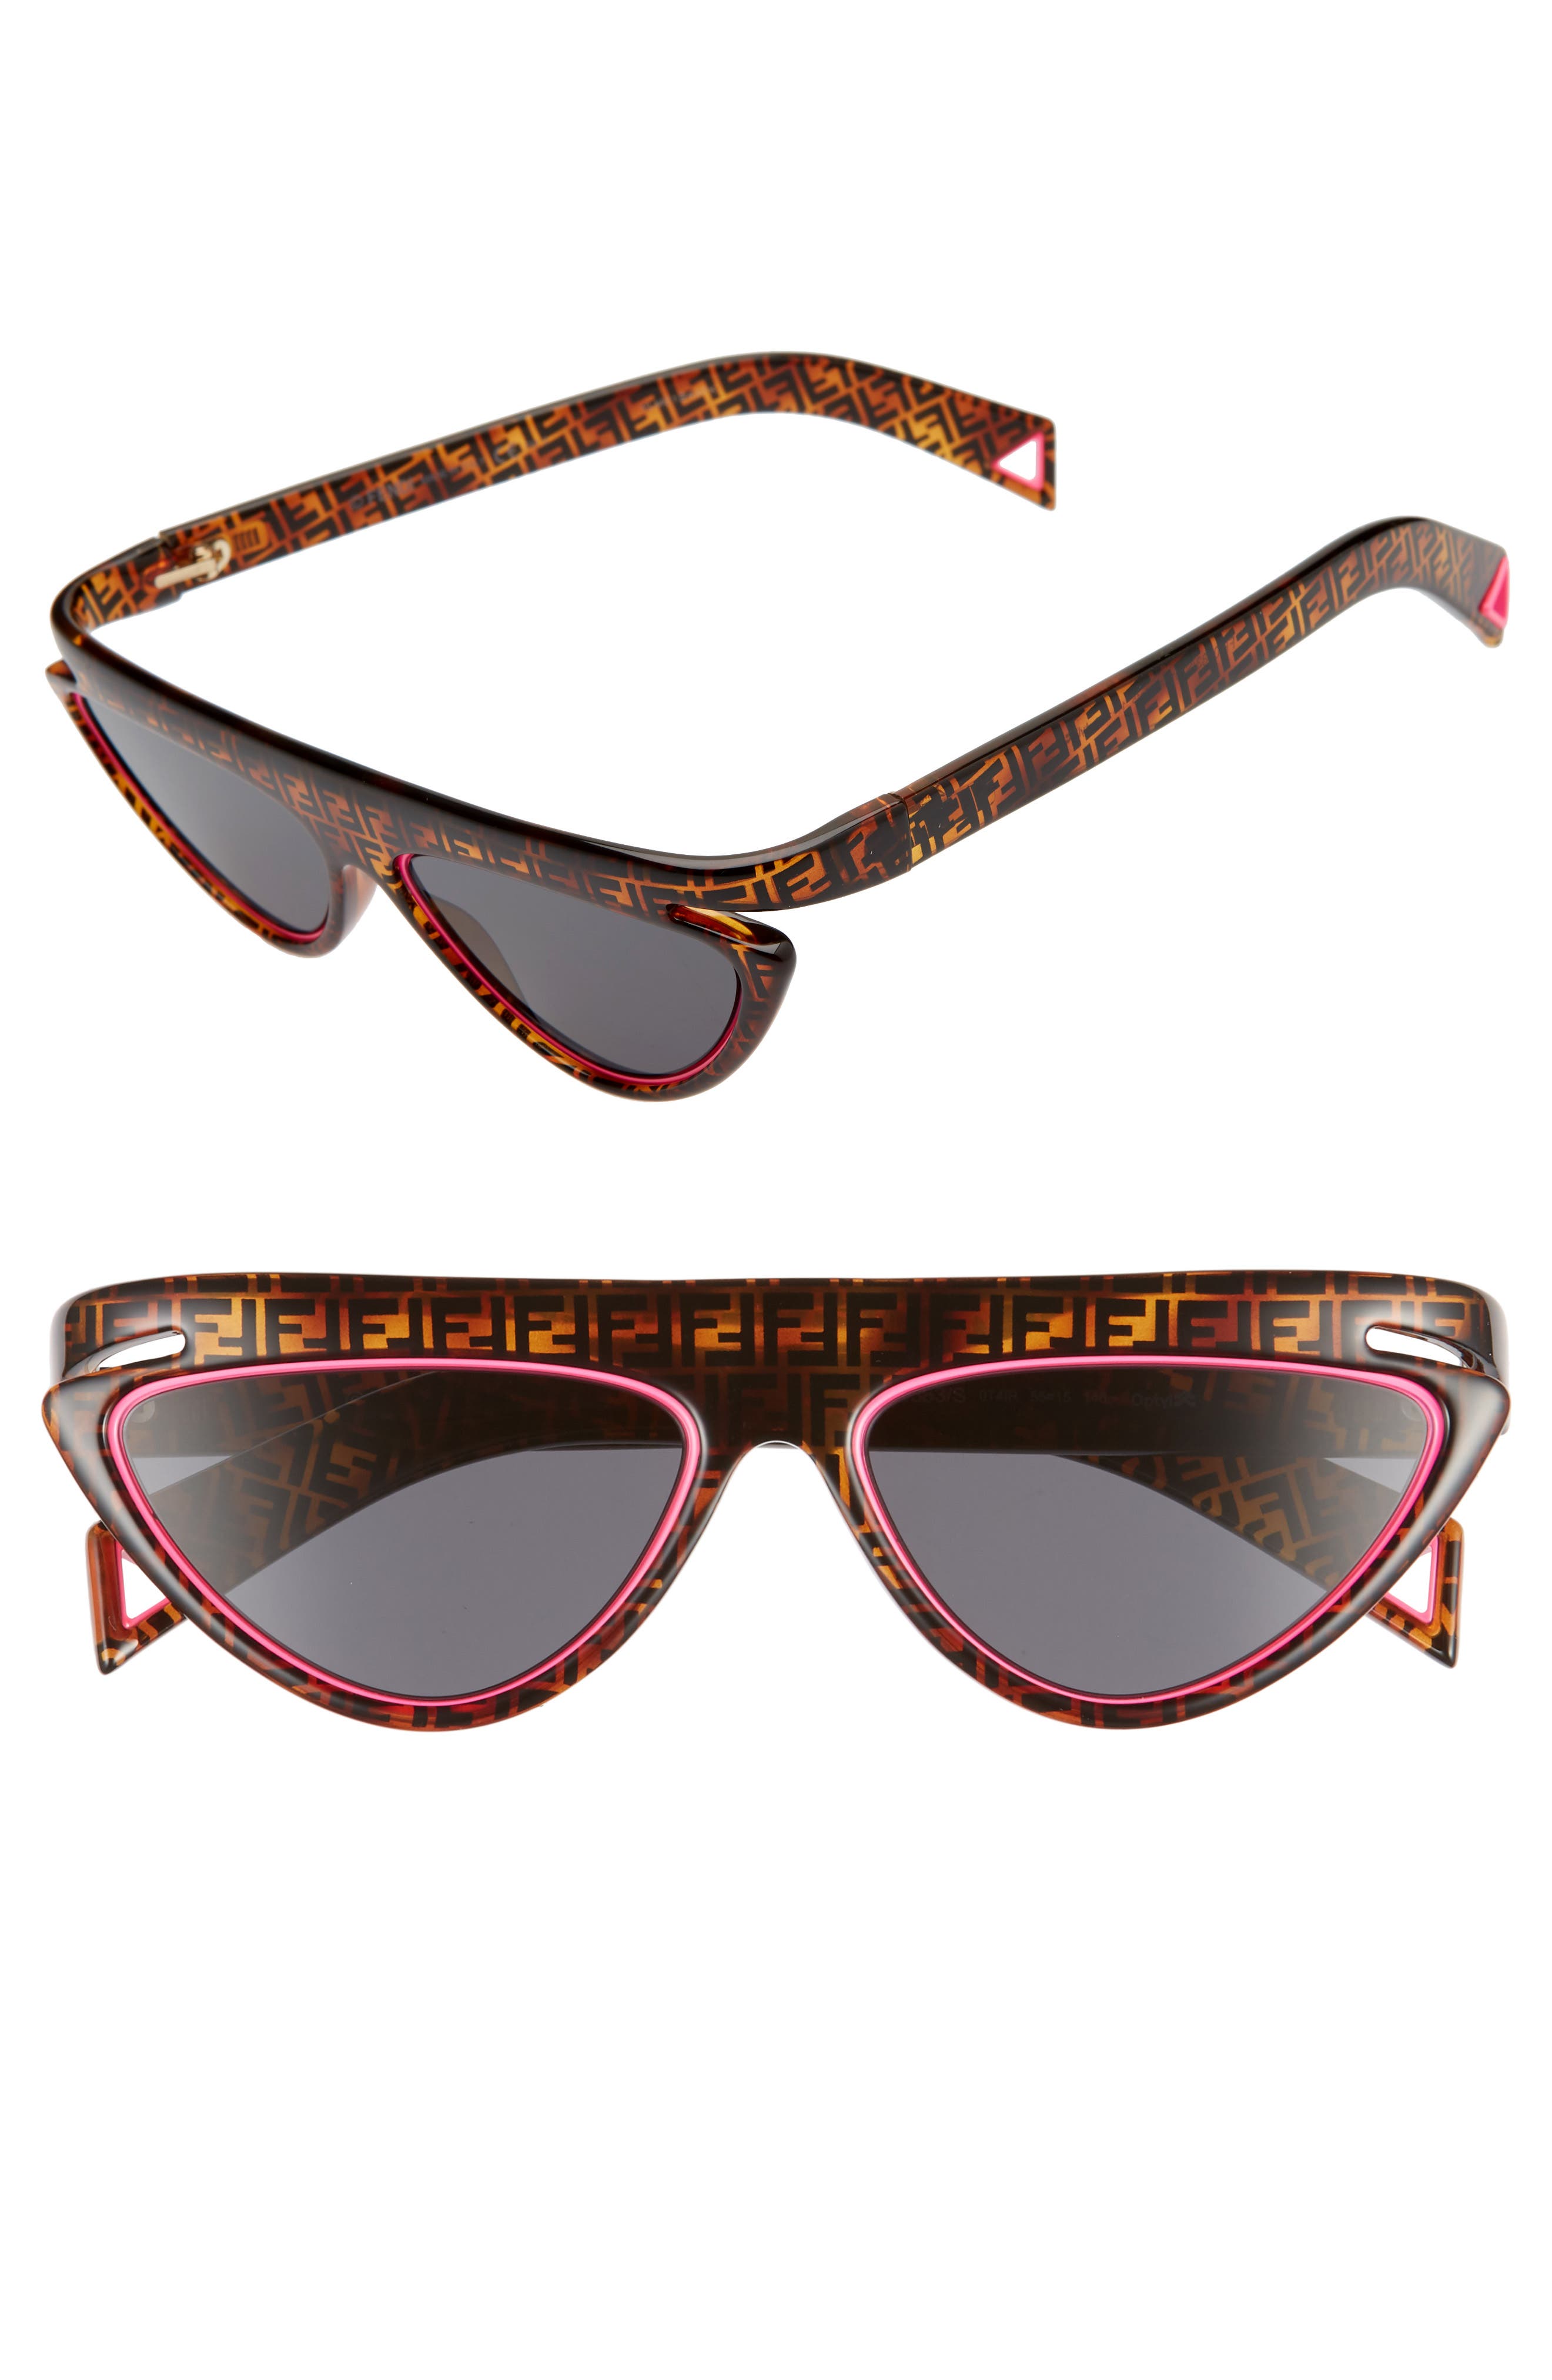 fendi flat top sunglasses